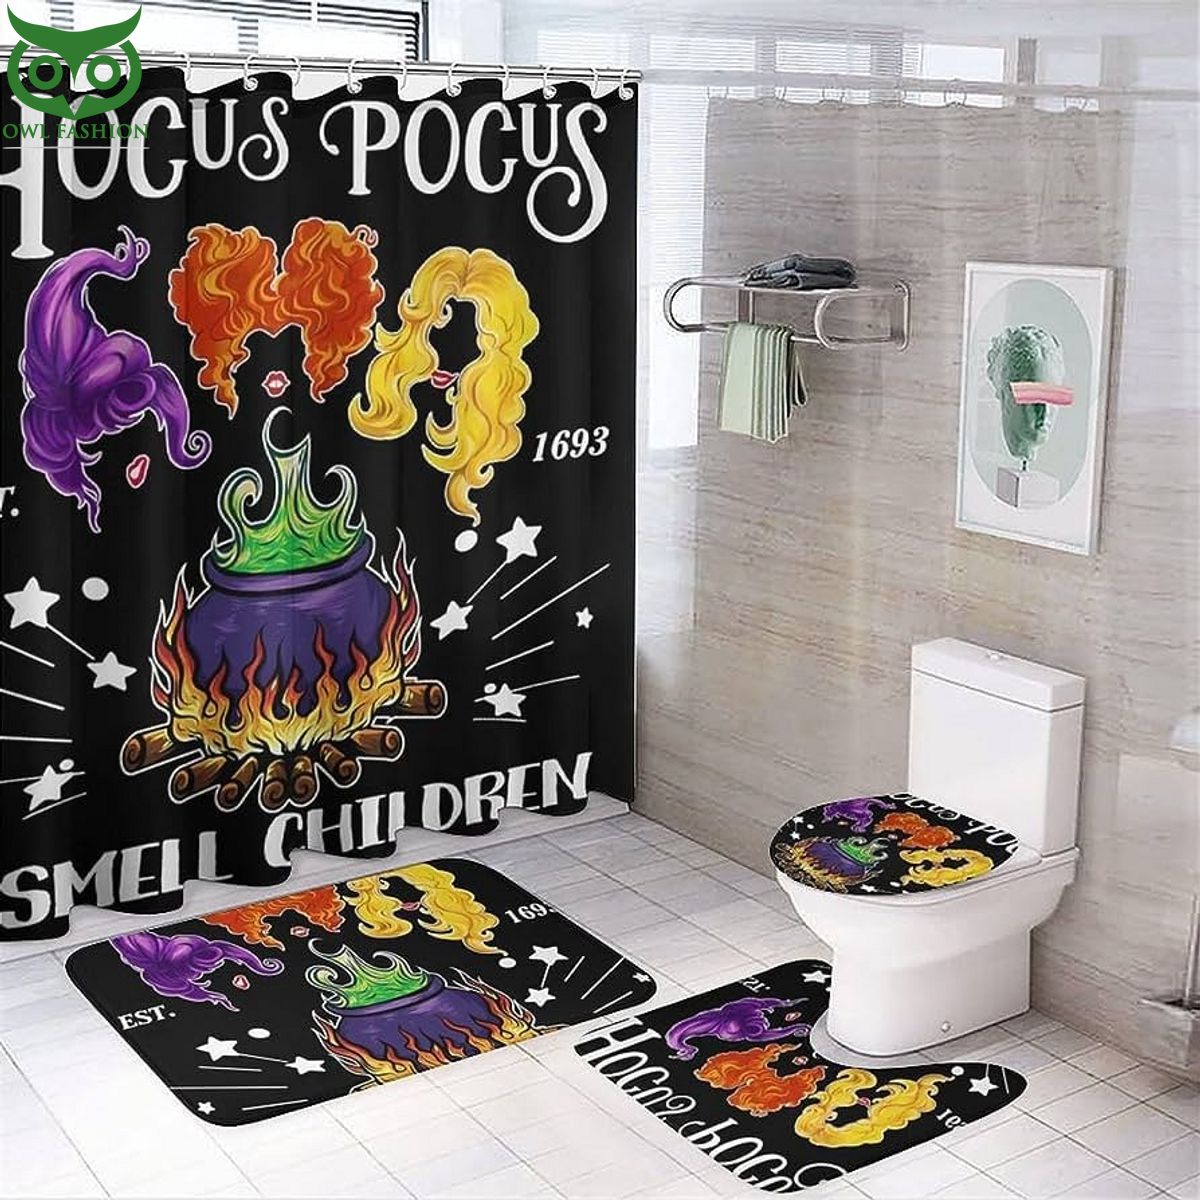 resger hocus pocus smell children full bath rug set 1 SoxcG.jpg